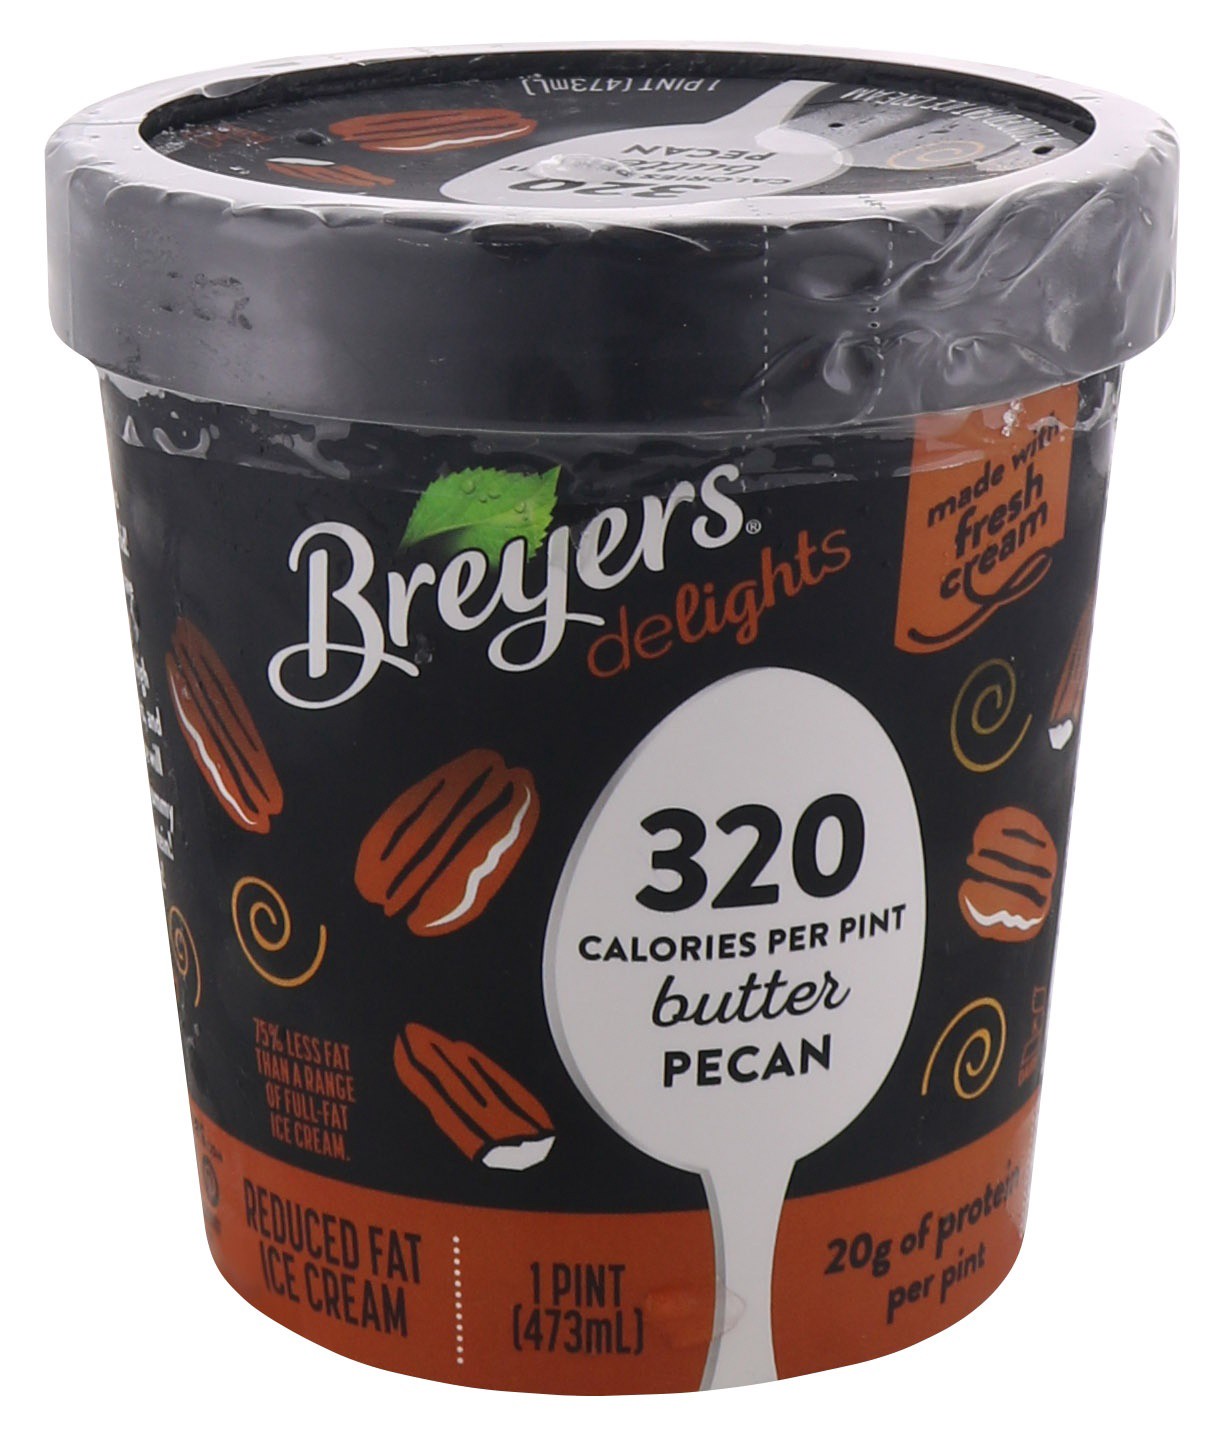 slide 1 of 3, Breyers Delights Butter Pecan Ice Cream, 1 pint